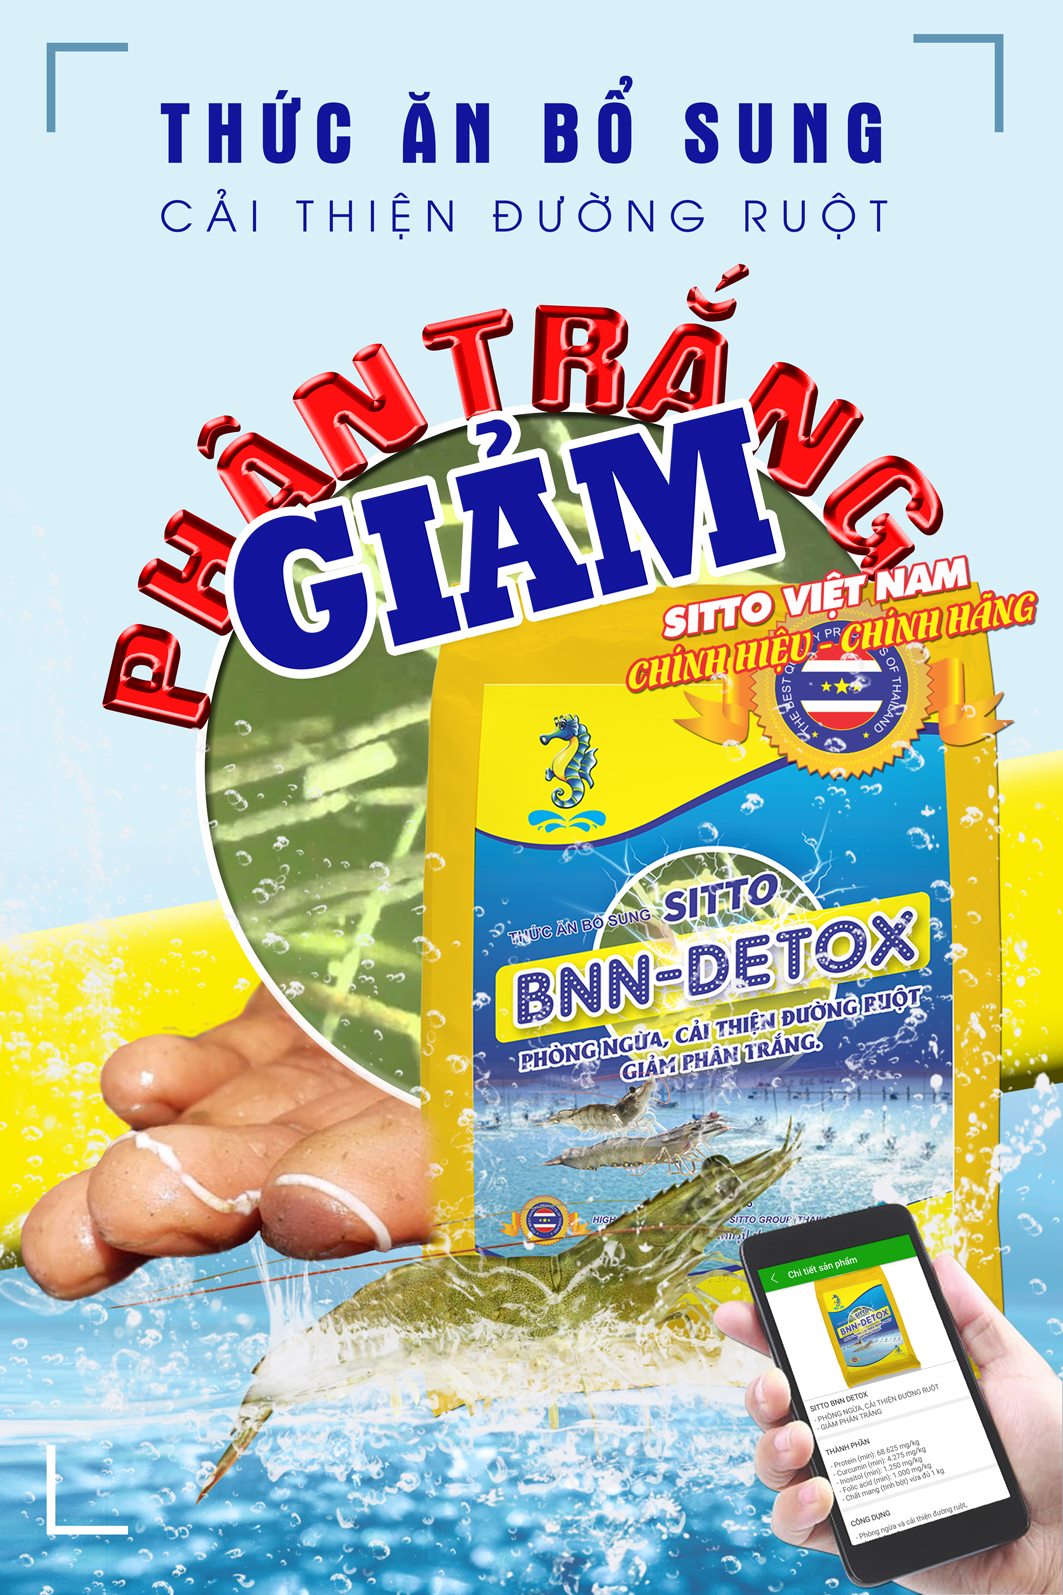 Sitto BNN-Detox (Gói 500g) - Thức ăn bổ sung cải thiện đường ruột